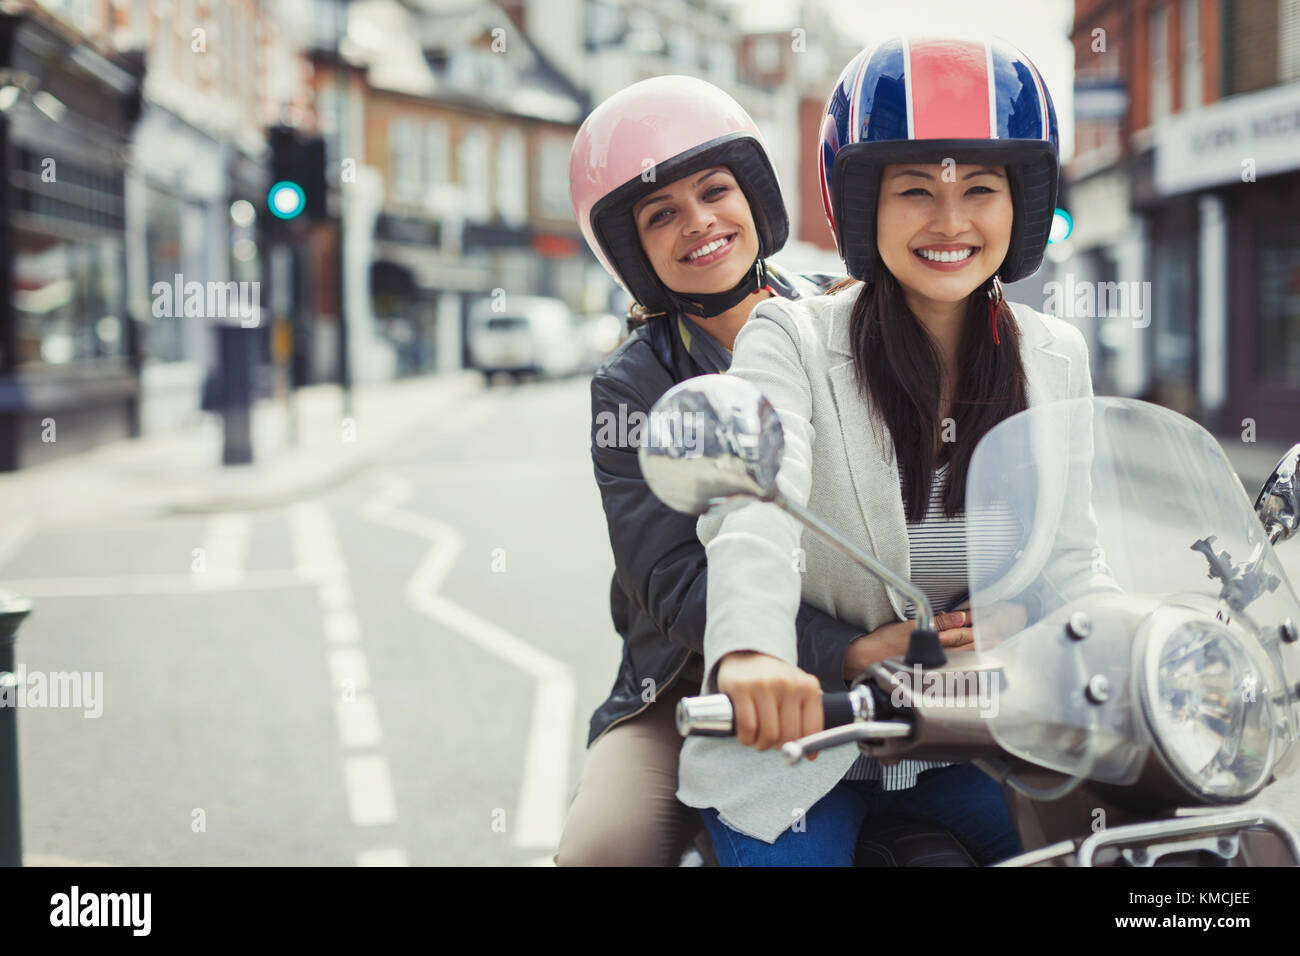 Jeunes femmes souriantes, amies, portant un casque, à bord d'un scooter automobile dans une rue urbaine Banque D'Images